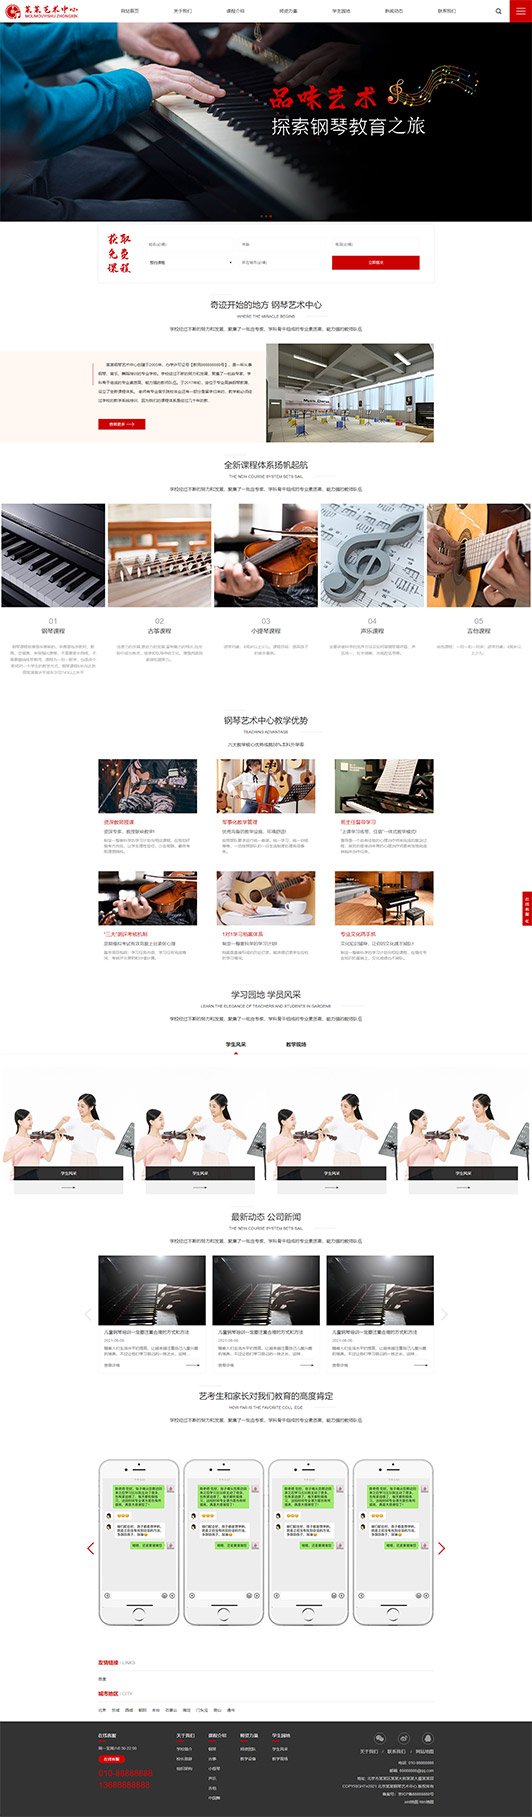 浙江钢琴艺术培训公司响应式企业网站